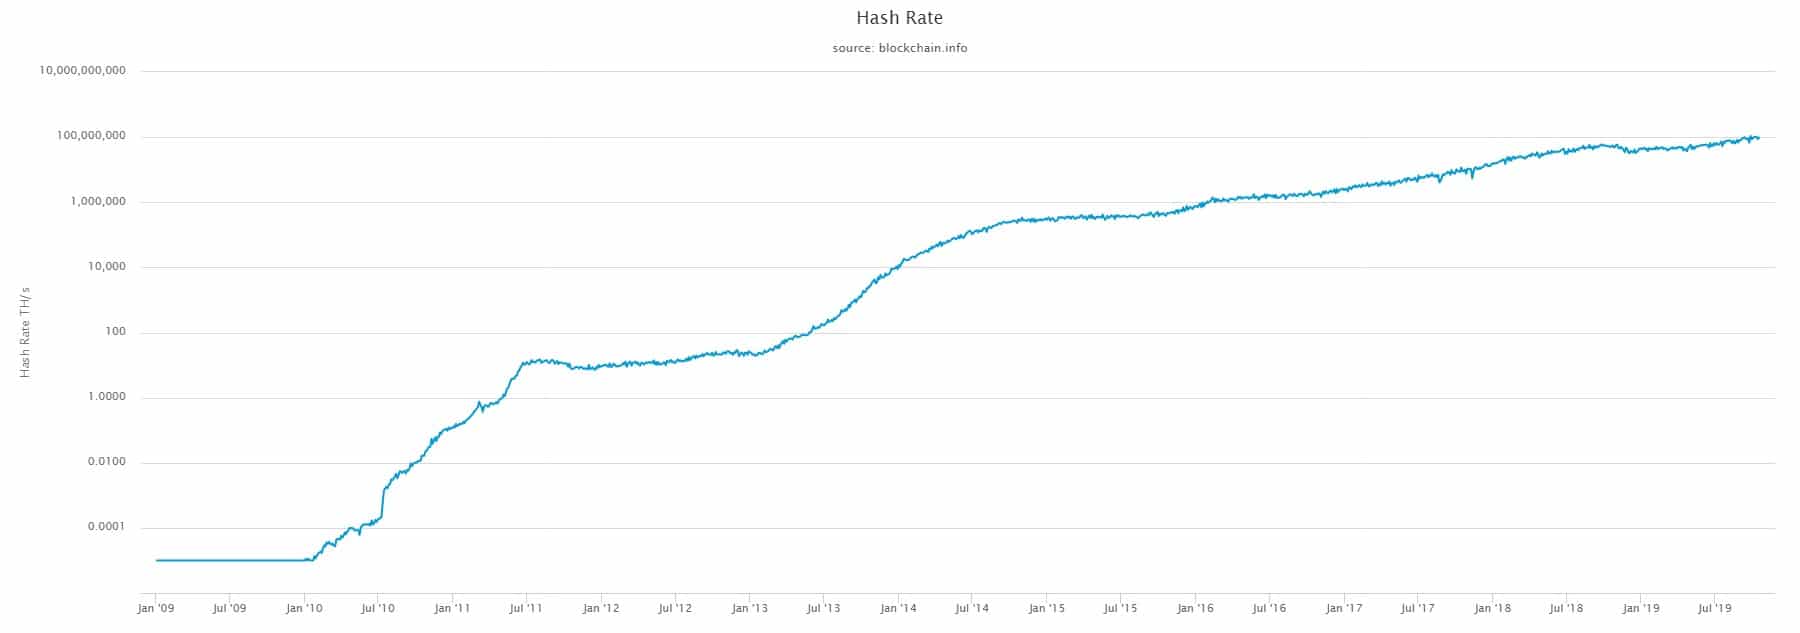 Taxa de hashs do Bitcoin continua em alta e batendo recordes em 2019